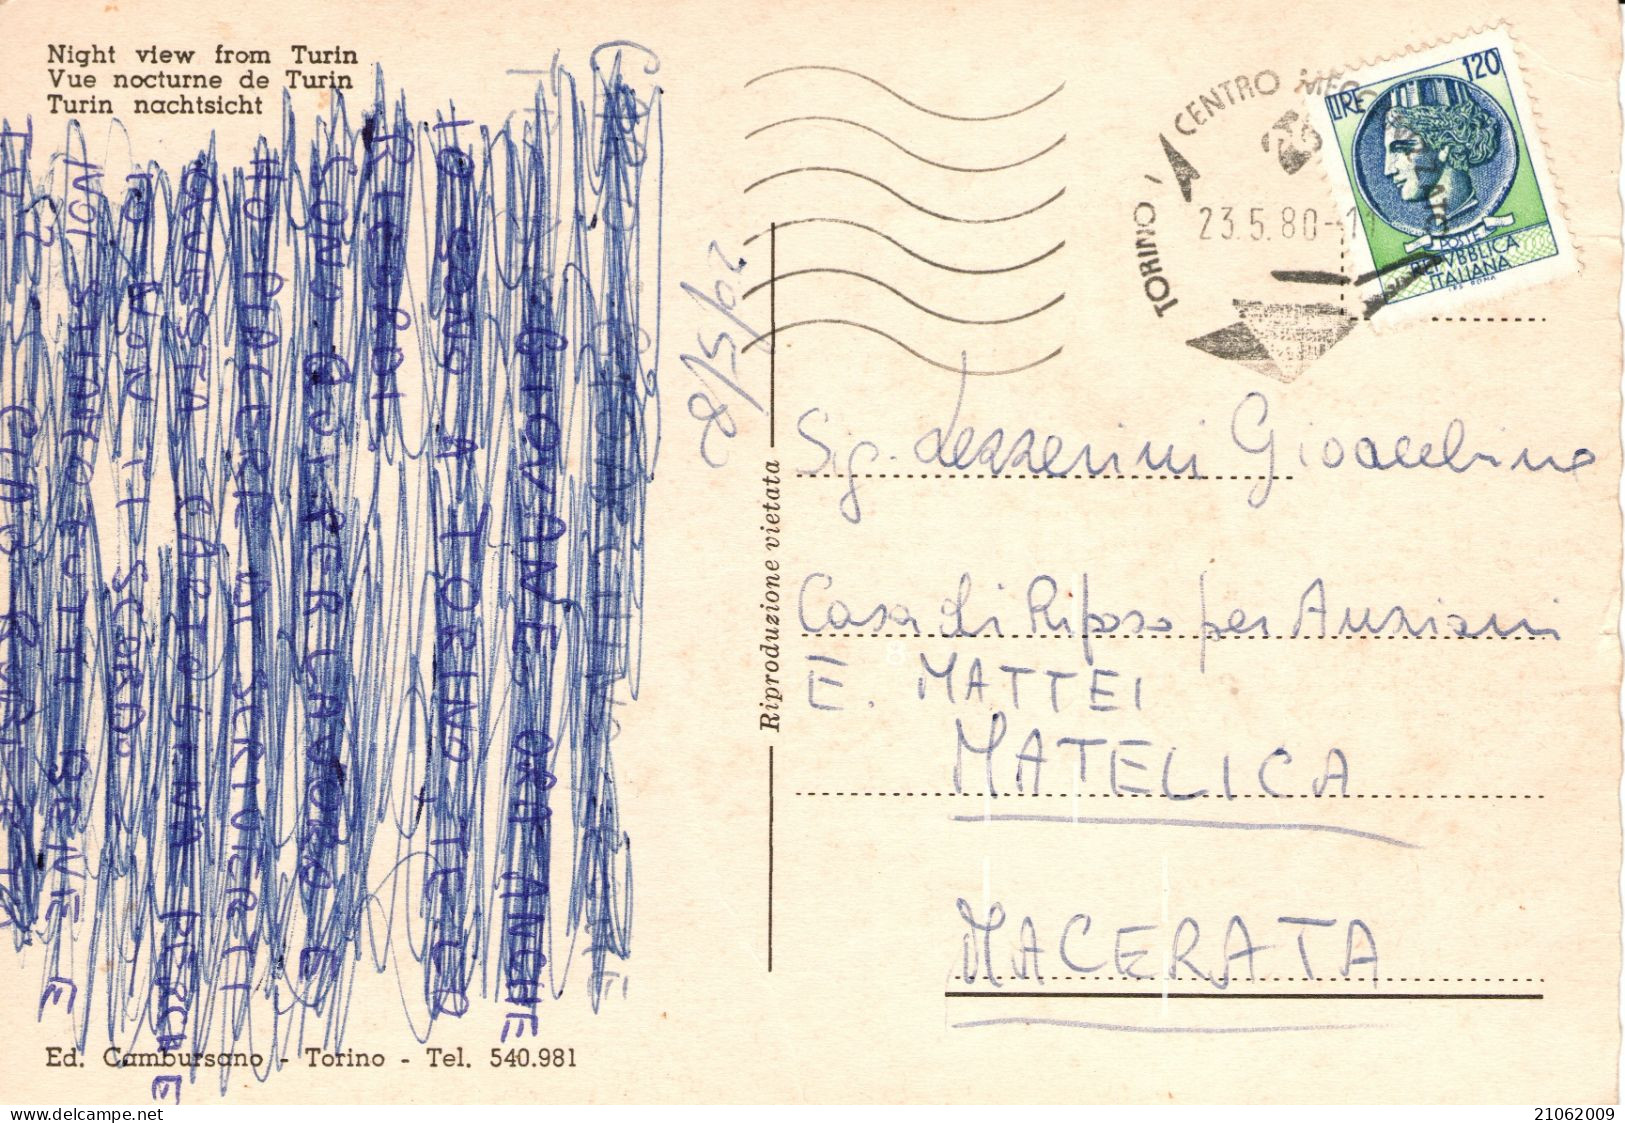 TORINO - VEDUTINE - PIAZZA S. CARLO PALAZZO MADAMA STAZIONE PORTA NUOVA MOLE ANTONELLIANA E PANORAMA - NOTTURNO - V1980 - Multi-vues, Vues Panoramiques